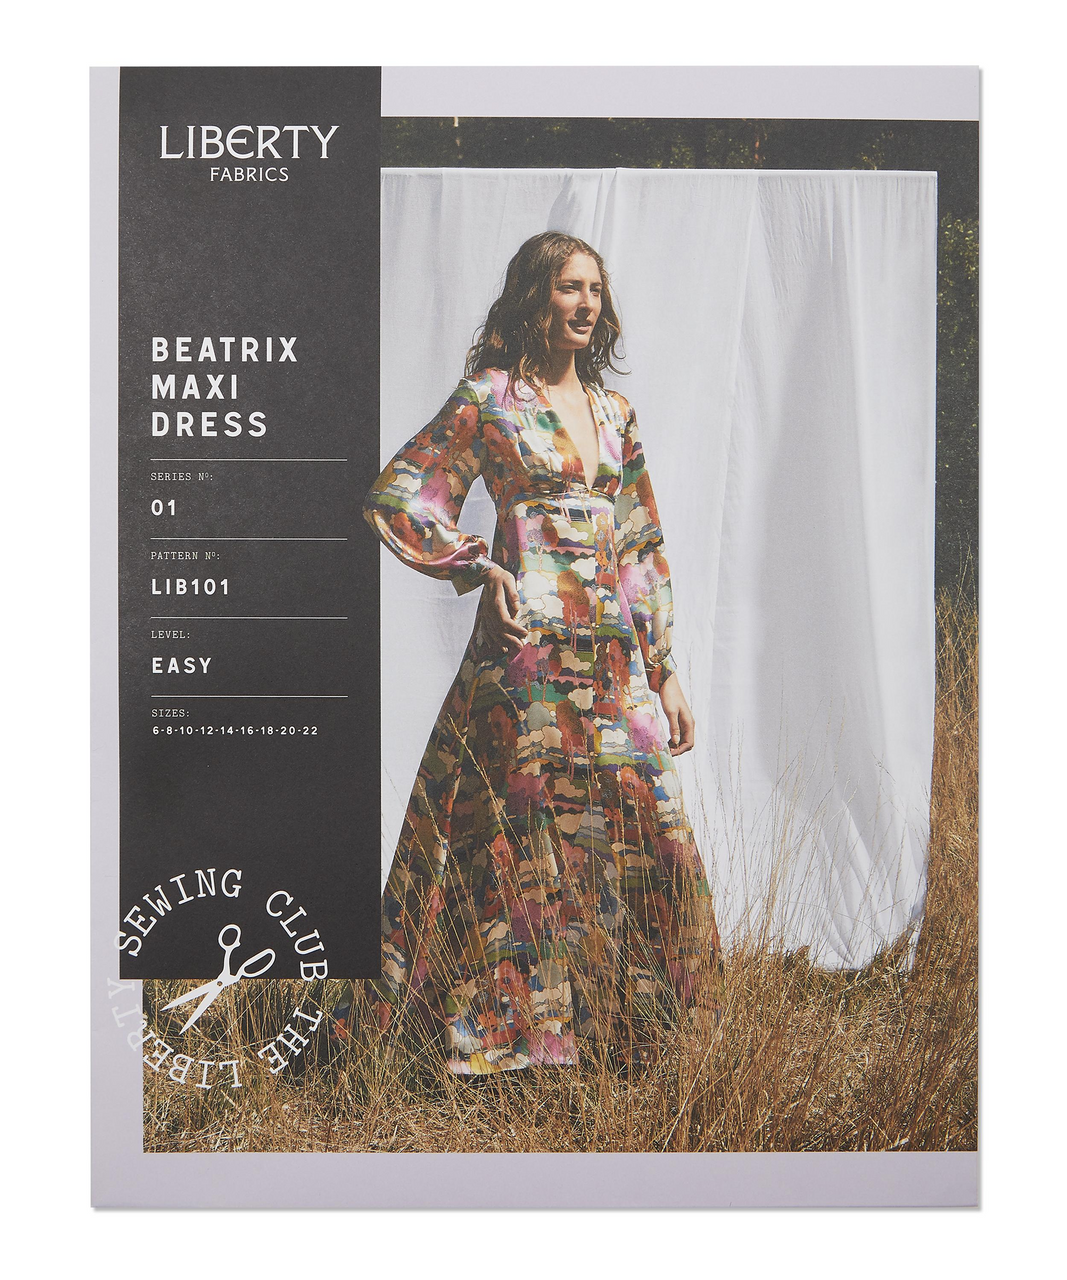 LIBERTY FABRICS Beatrix Maxi Dress Sewing Pattern Size: 6-22